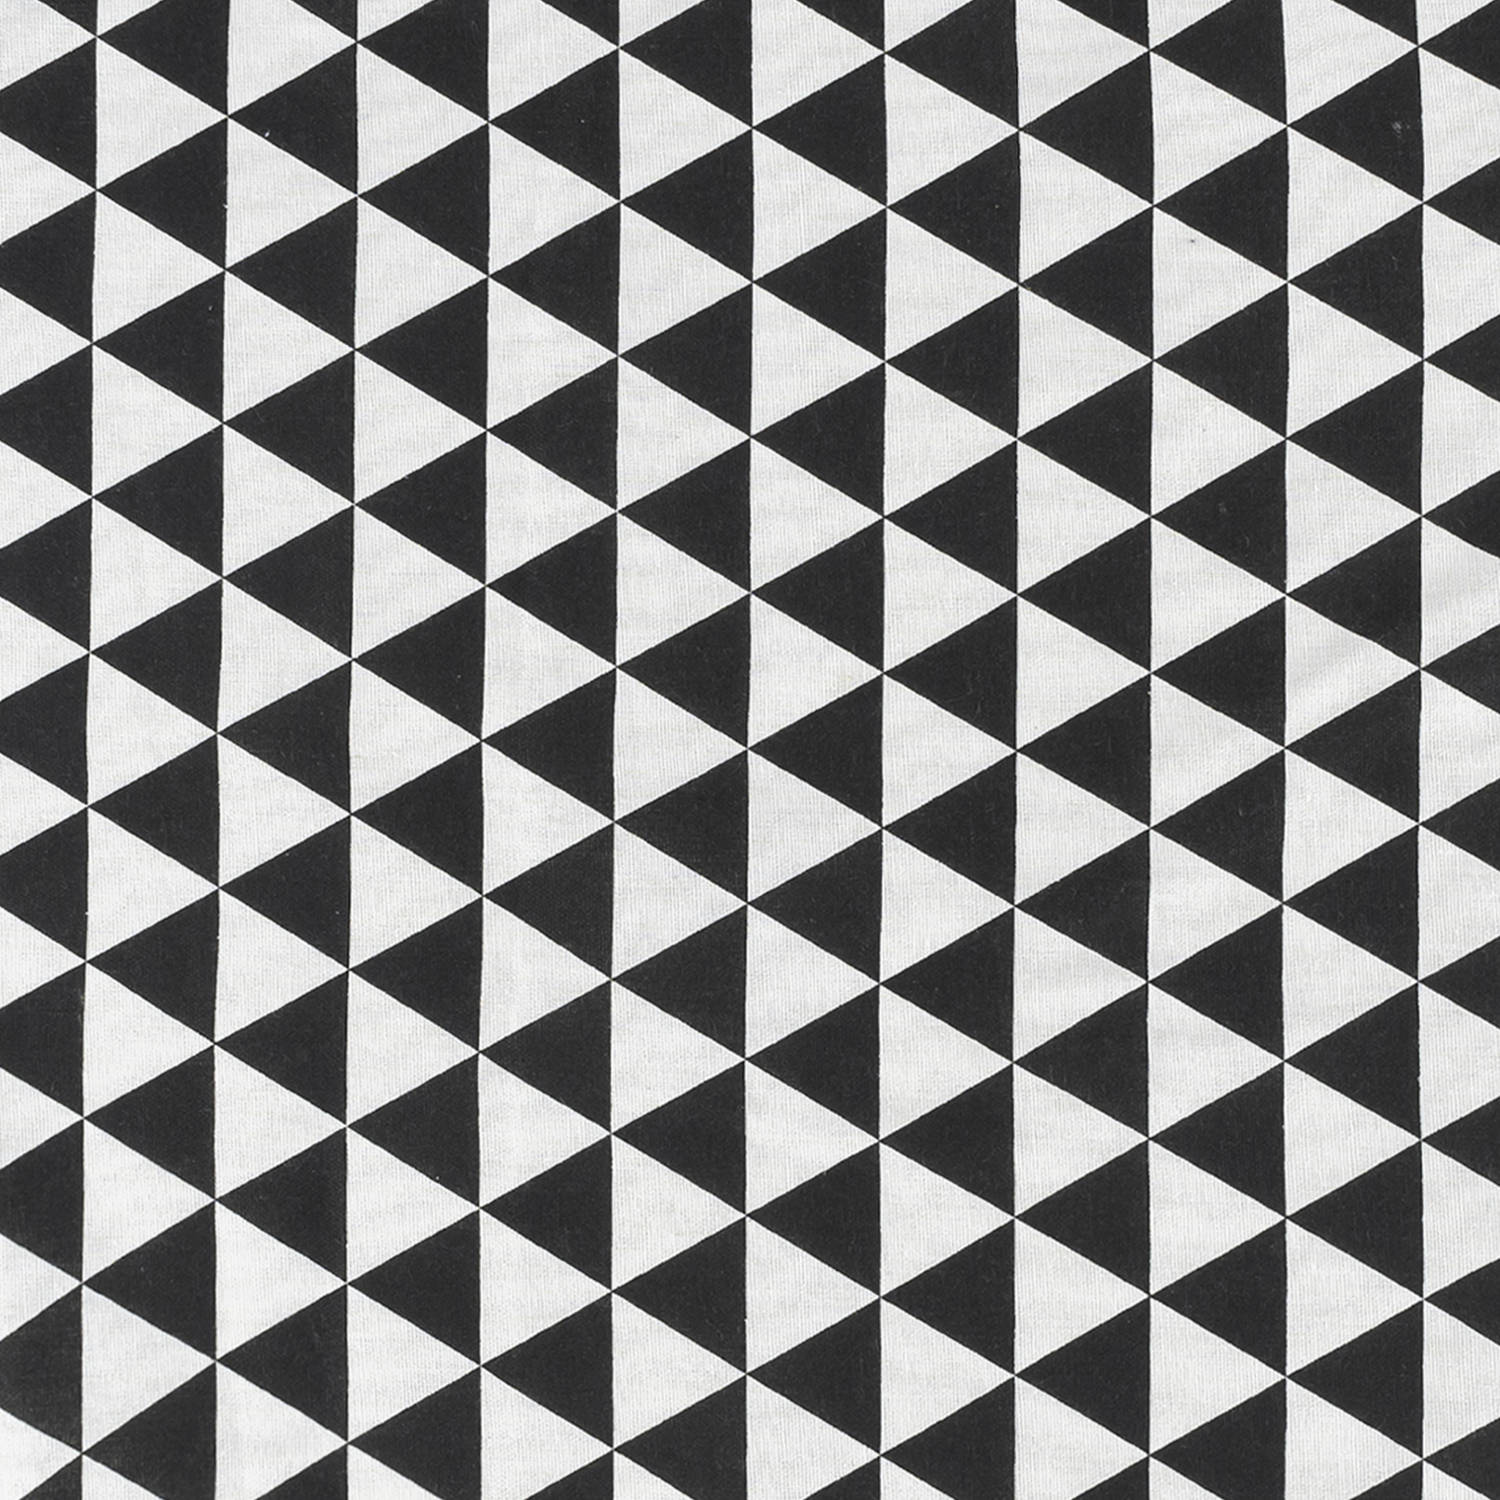 Een zin twee Betasten Krumble Theedoek Driehoek patroon - 60 x 40 cm - Katoen - Zwart/wit |  Blokker